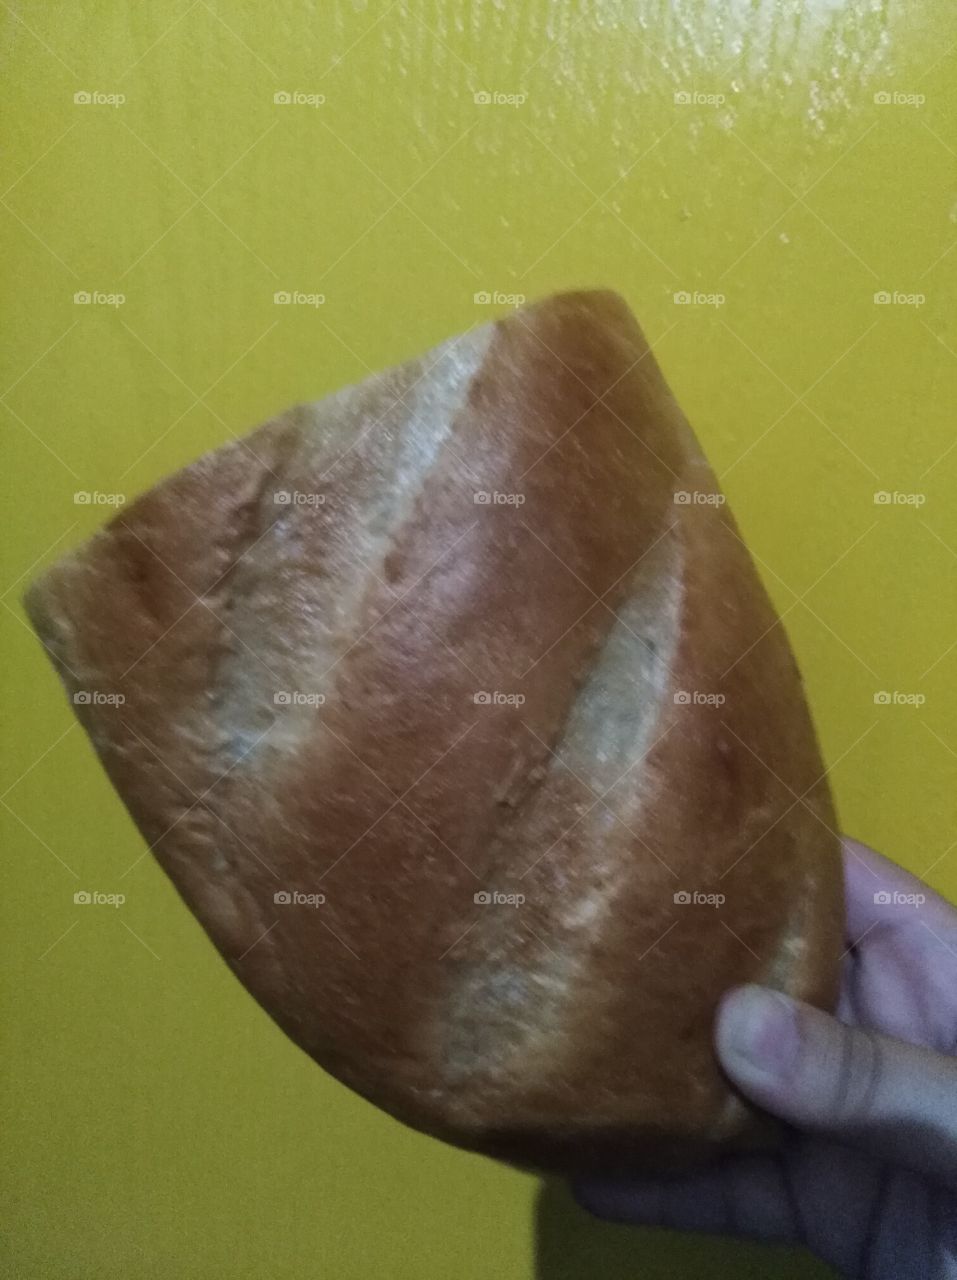 tasty bread